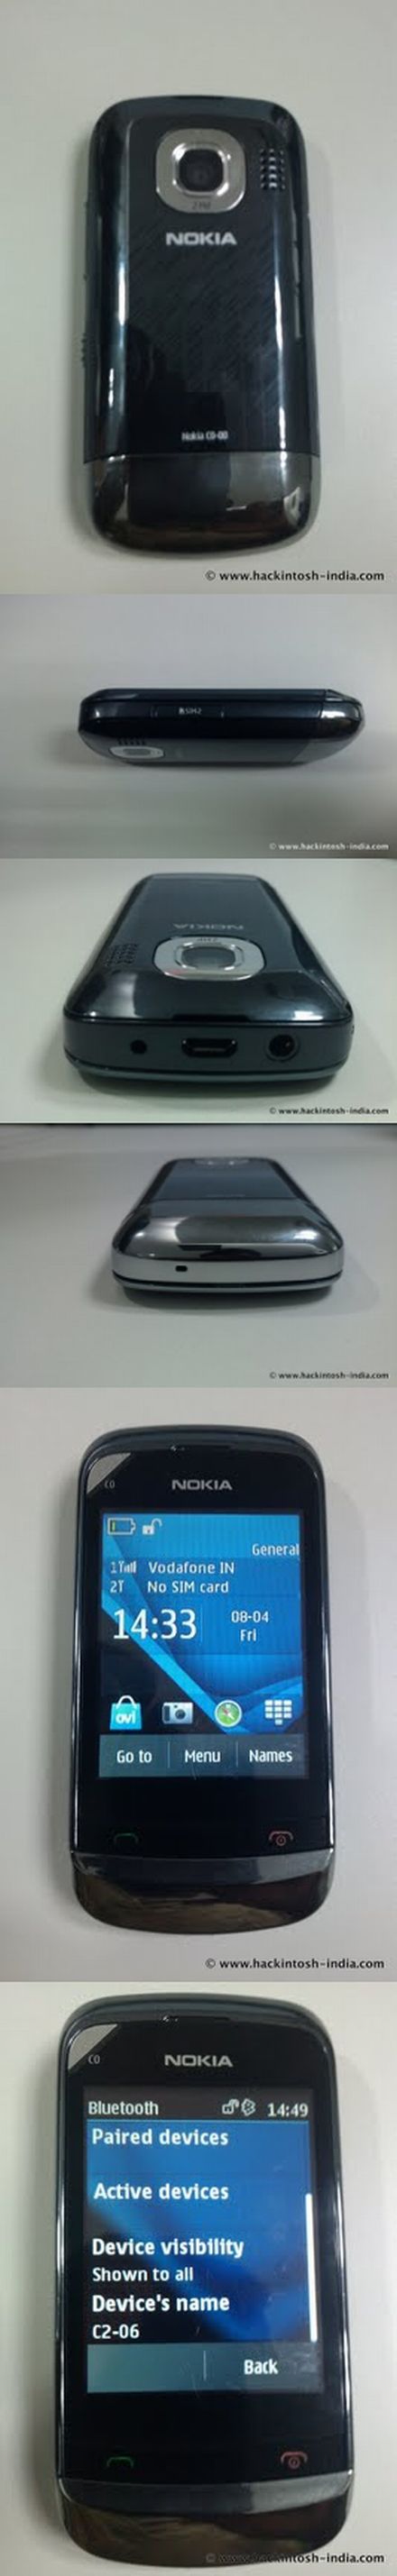 Nokia C2-06: dual SIM a belépő kategóriában